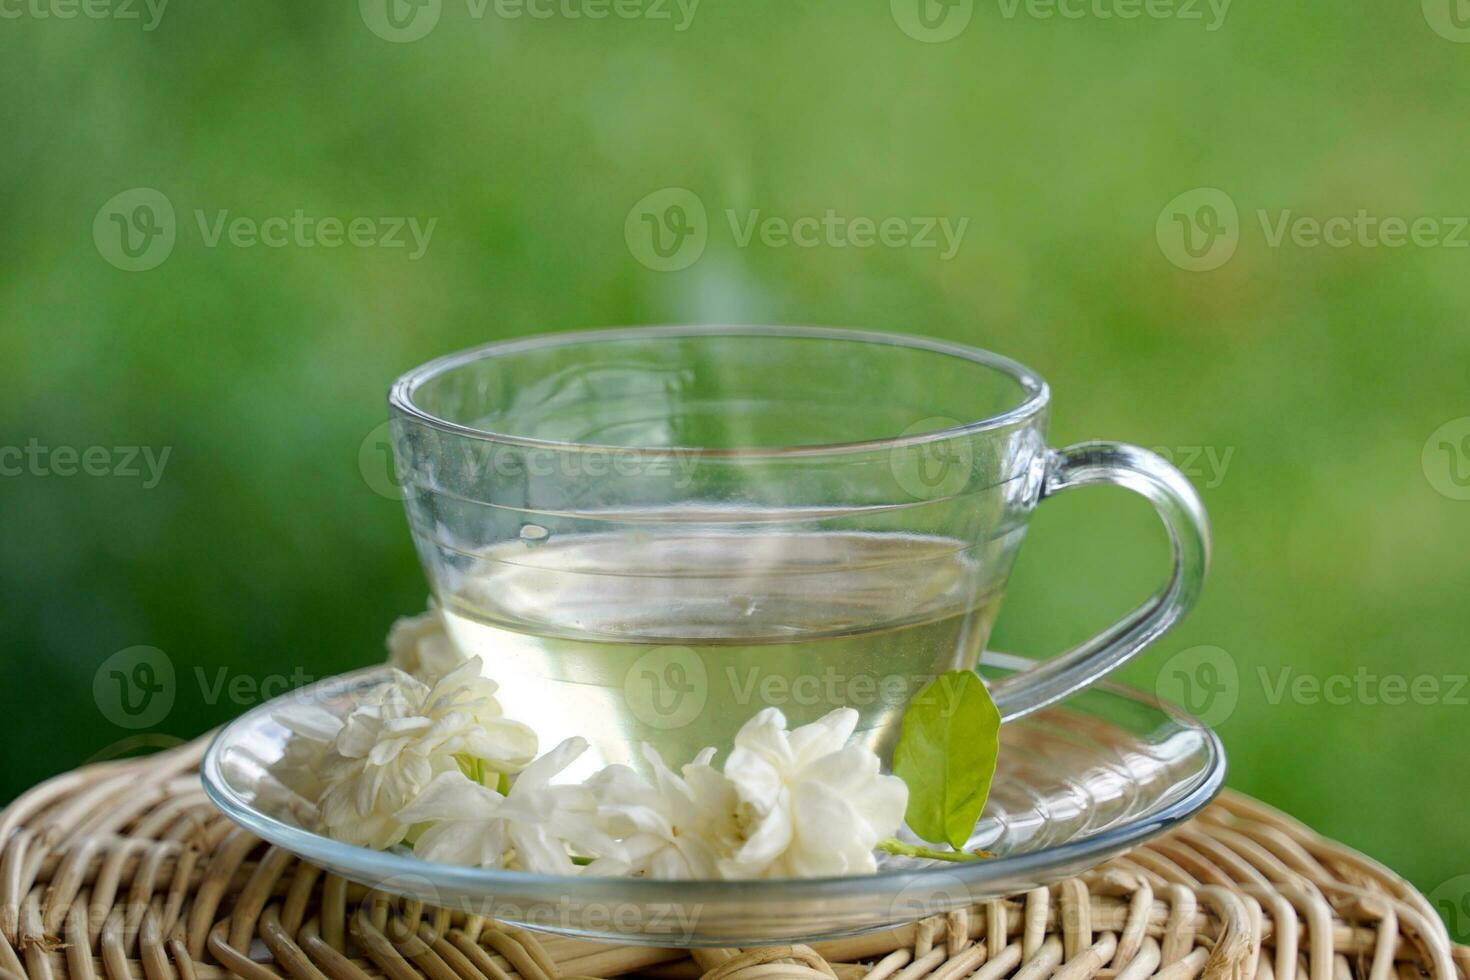 jasmijn thee en jasmijn groen thee het is een thee recept dat toepassingen zuiver jasmijn bloemen. en een mengsel van jasmijn bloemen en groen thee naar verbeteren de aroma drinken en mooi zo voor Gezondheid foto